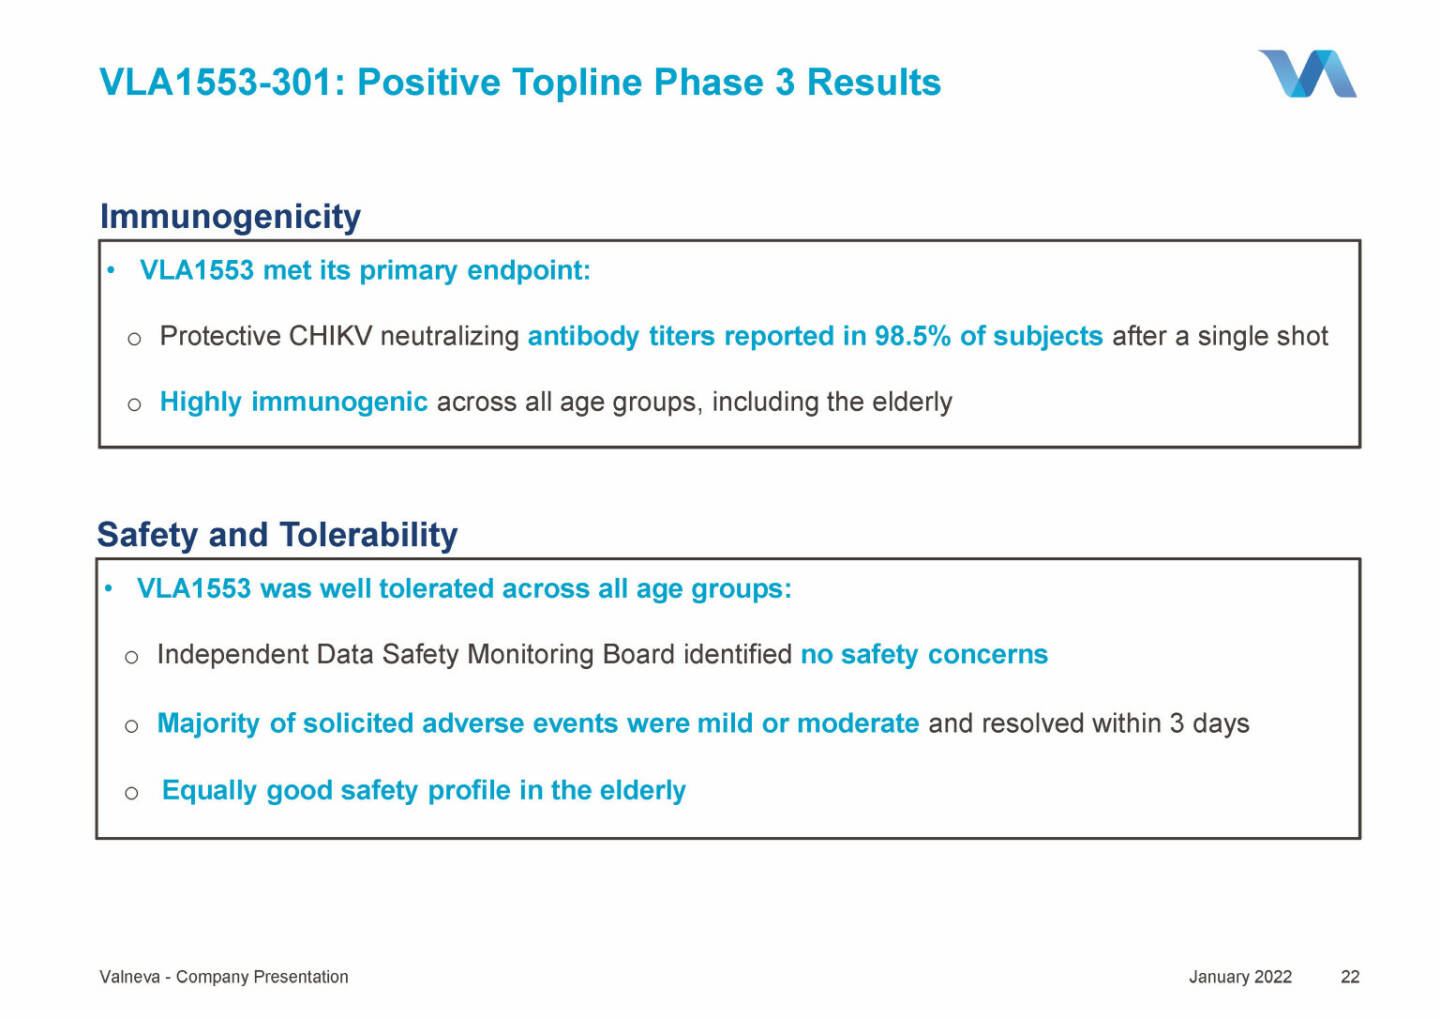 Valneva - VLA1553-301: Positive Topline Phase 3 Results